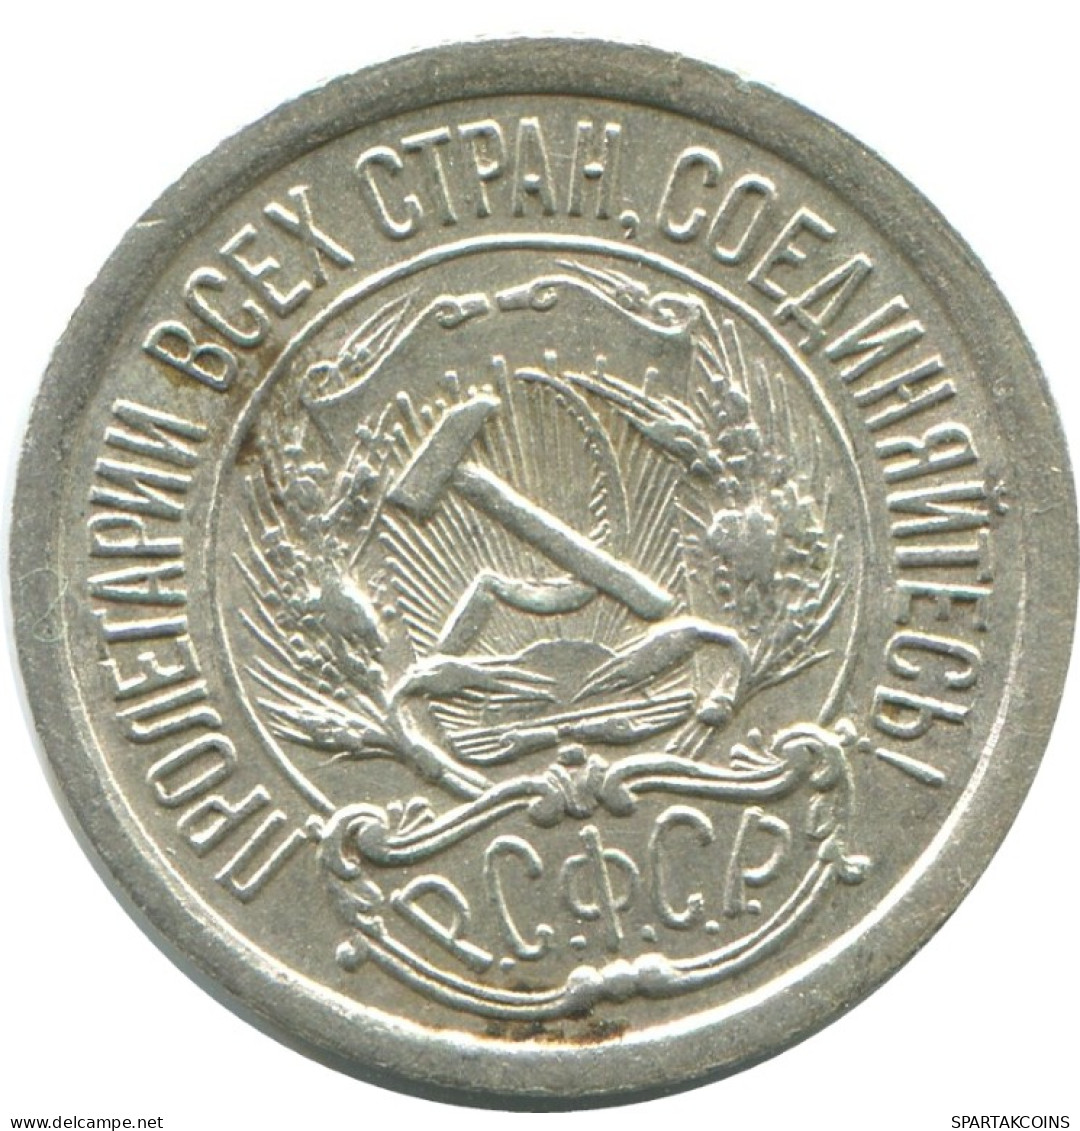 10 KOPEKS 1923 RUSSLAND RUSSIA RSFSR SILBER Münze HIGH GRADE #AE968.4.D.A - Russia